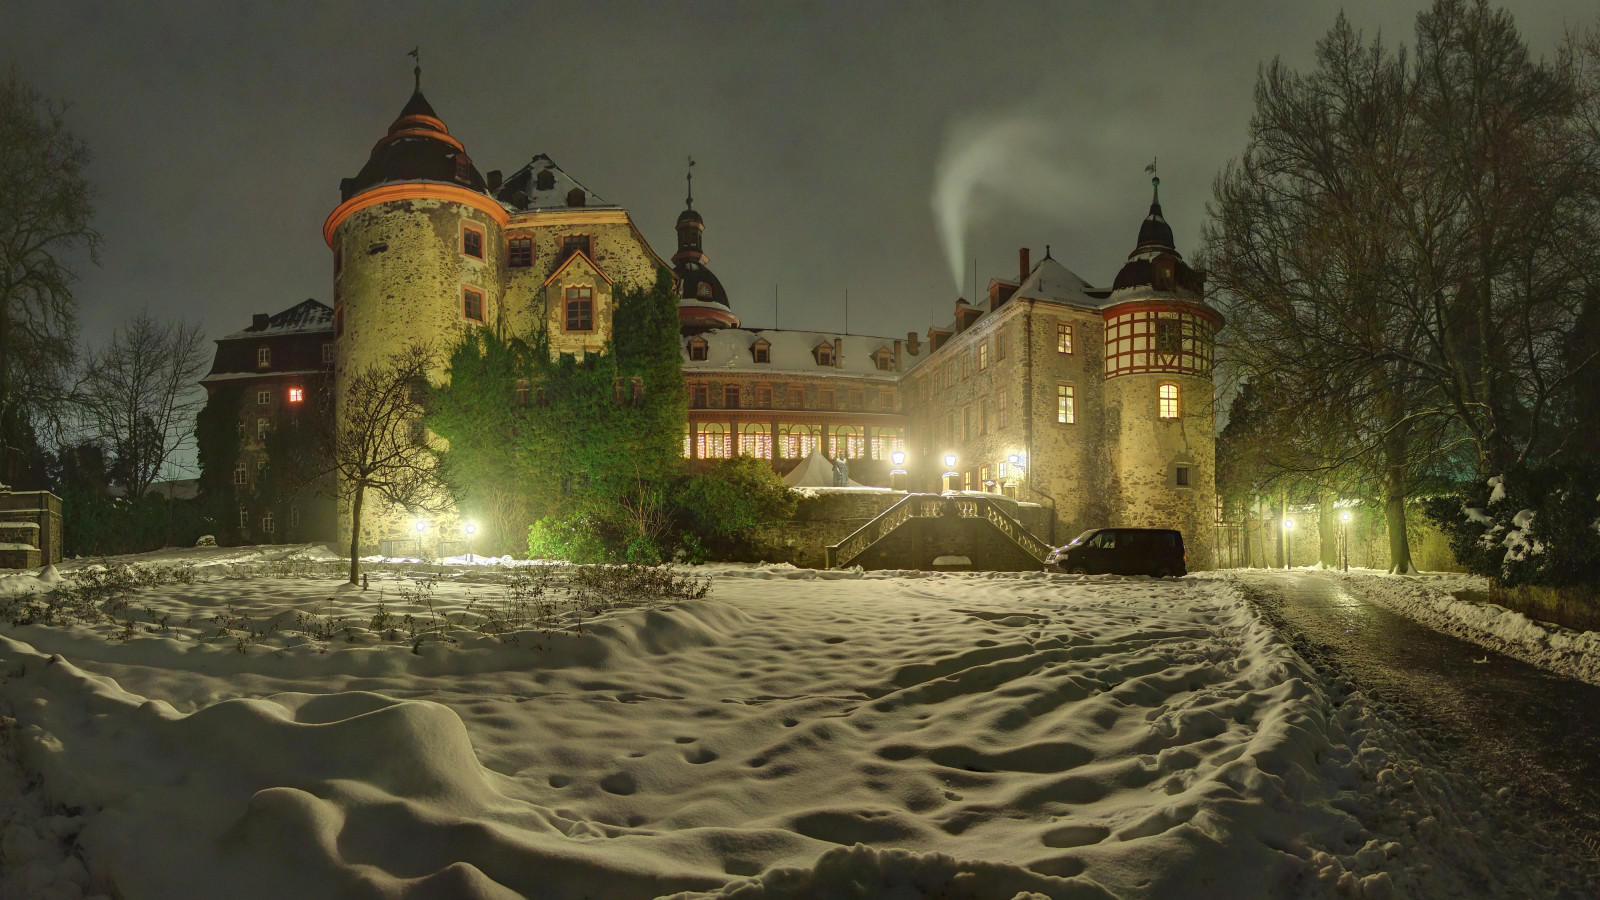 雪, 冬季, 树木, 灯, 晚, 德国, 城堡, 雪